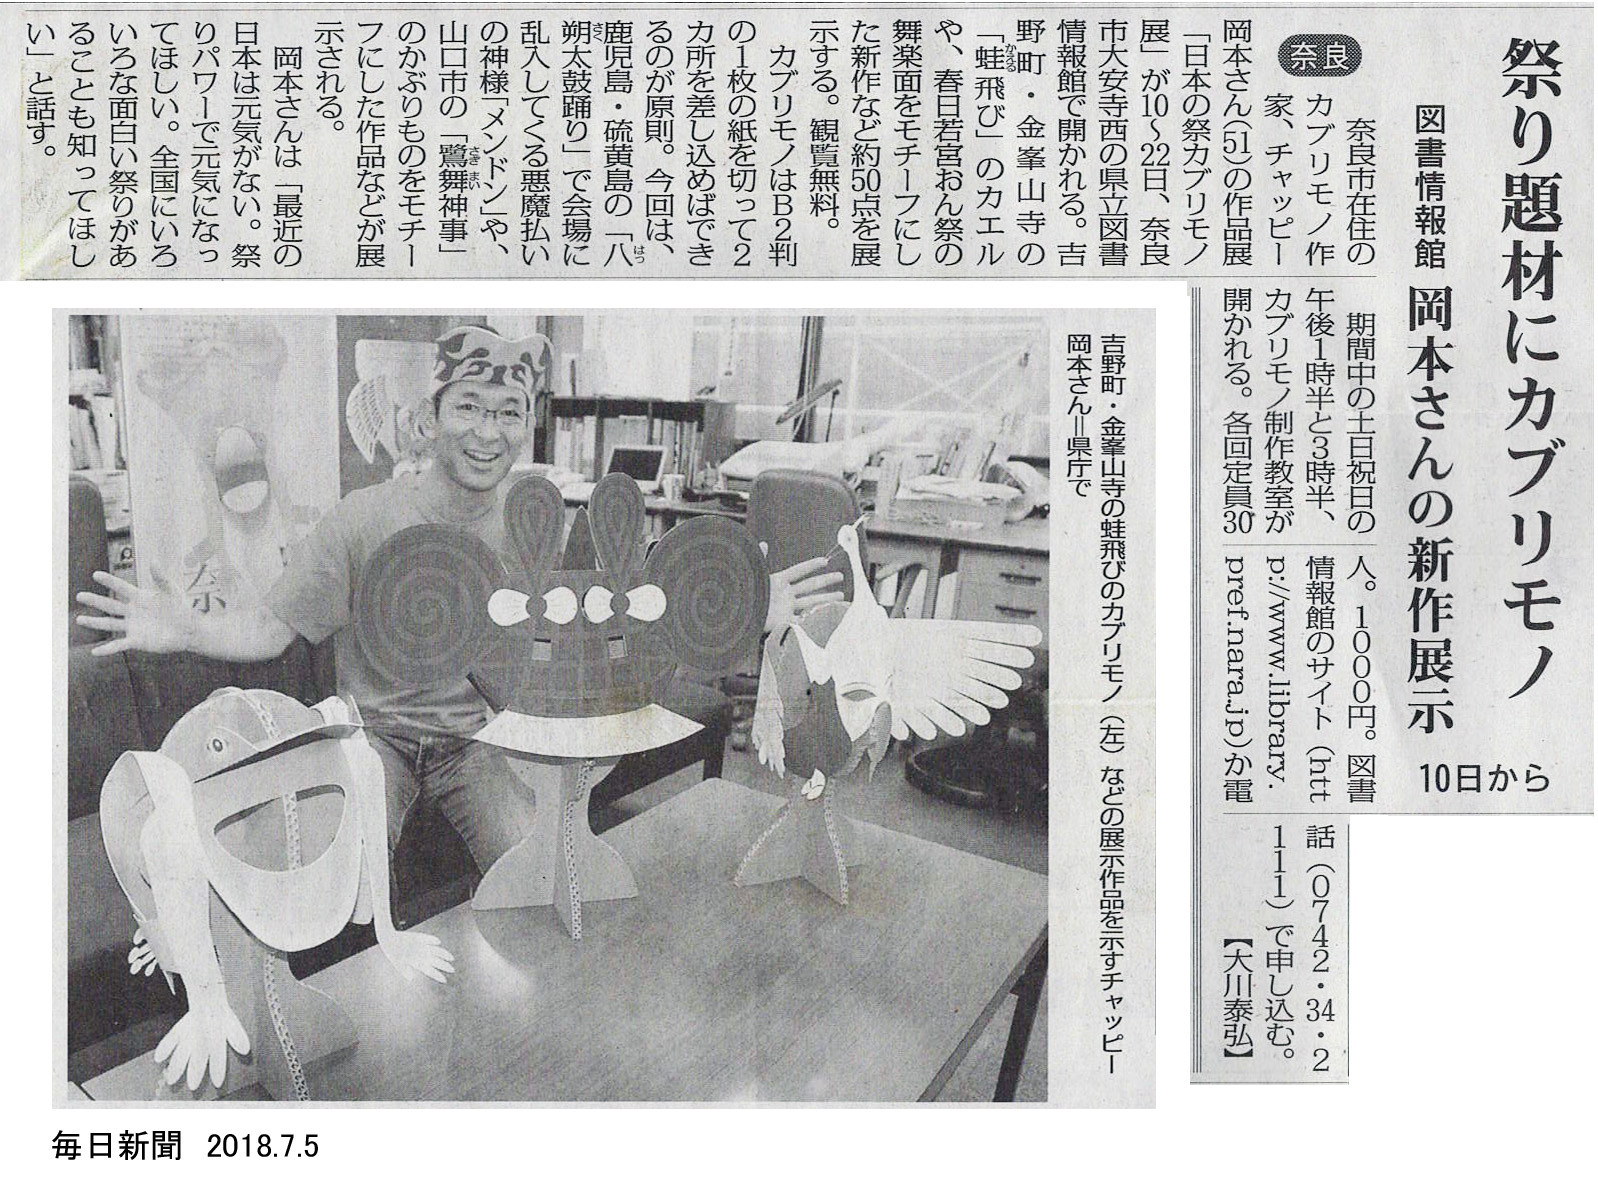 チャッピー岡本　日本の祭カブリモノ展の毎日新聞掲載分